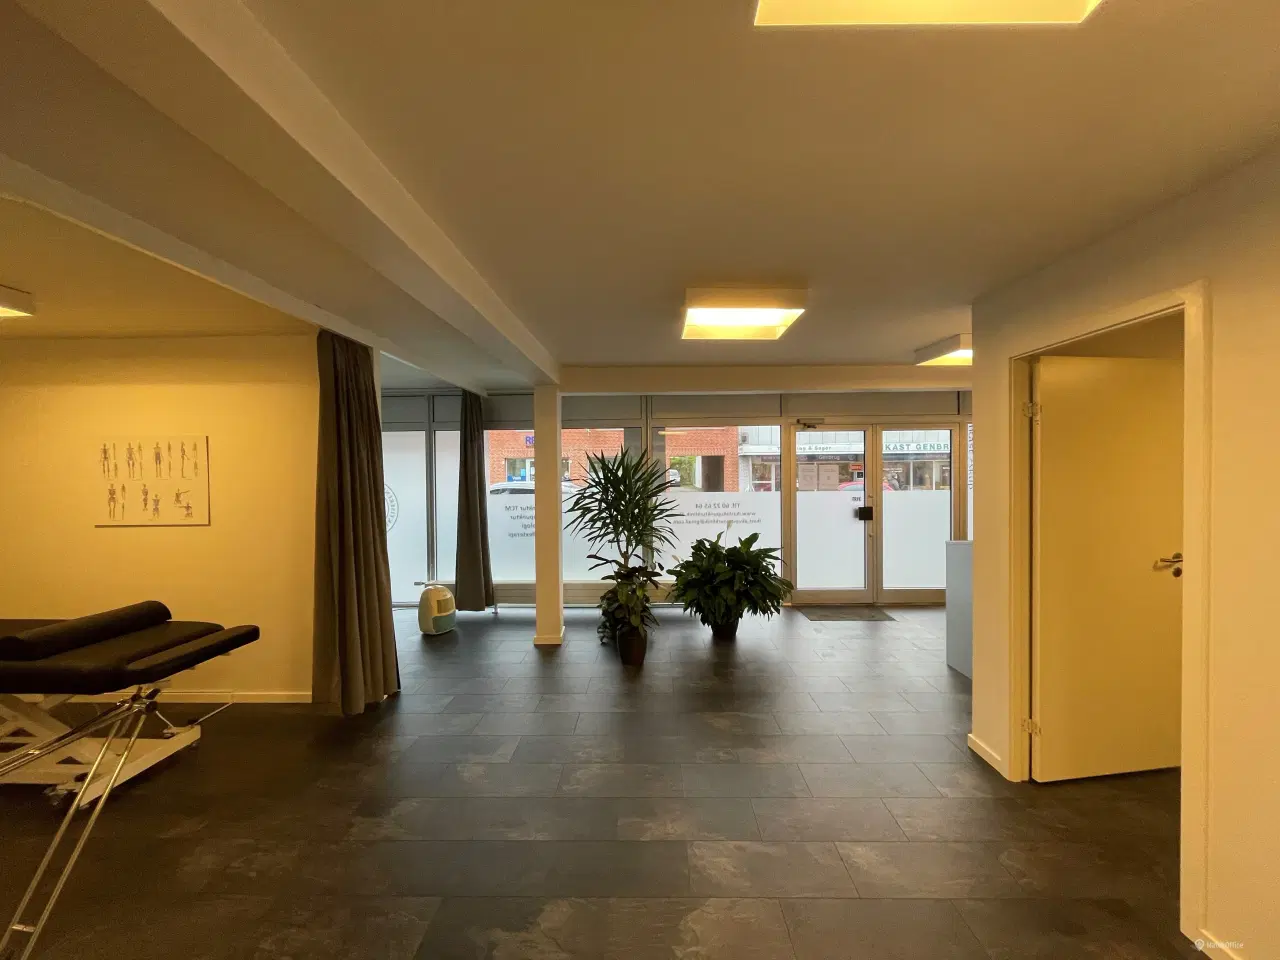 Billede 11 - 110 m2 kontor, klinik, butik centralt i Ikast by.